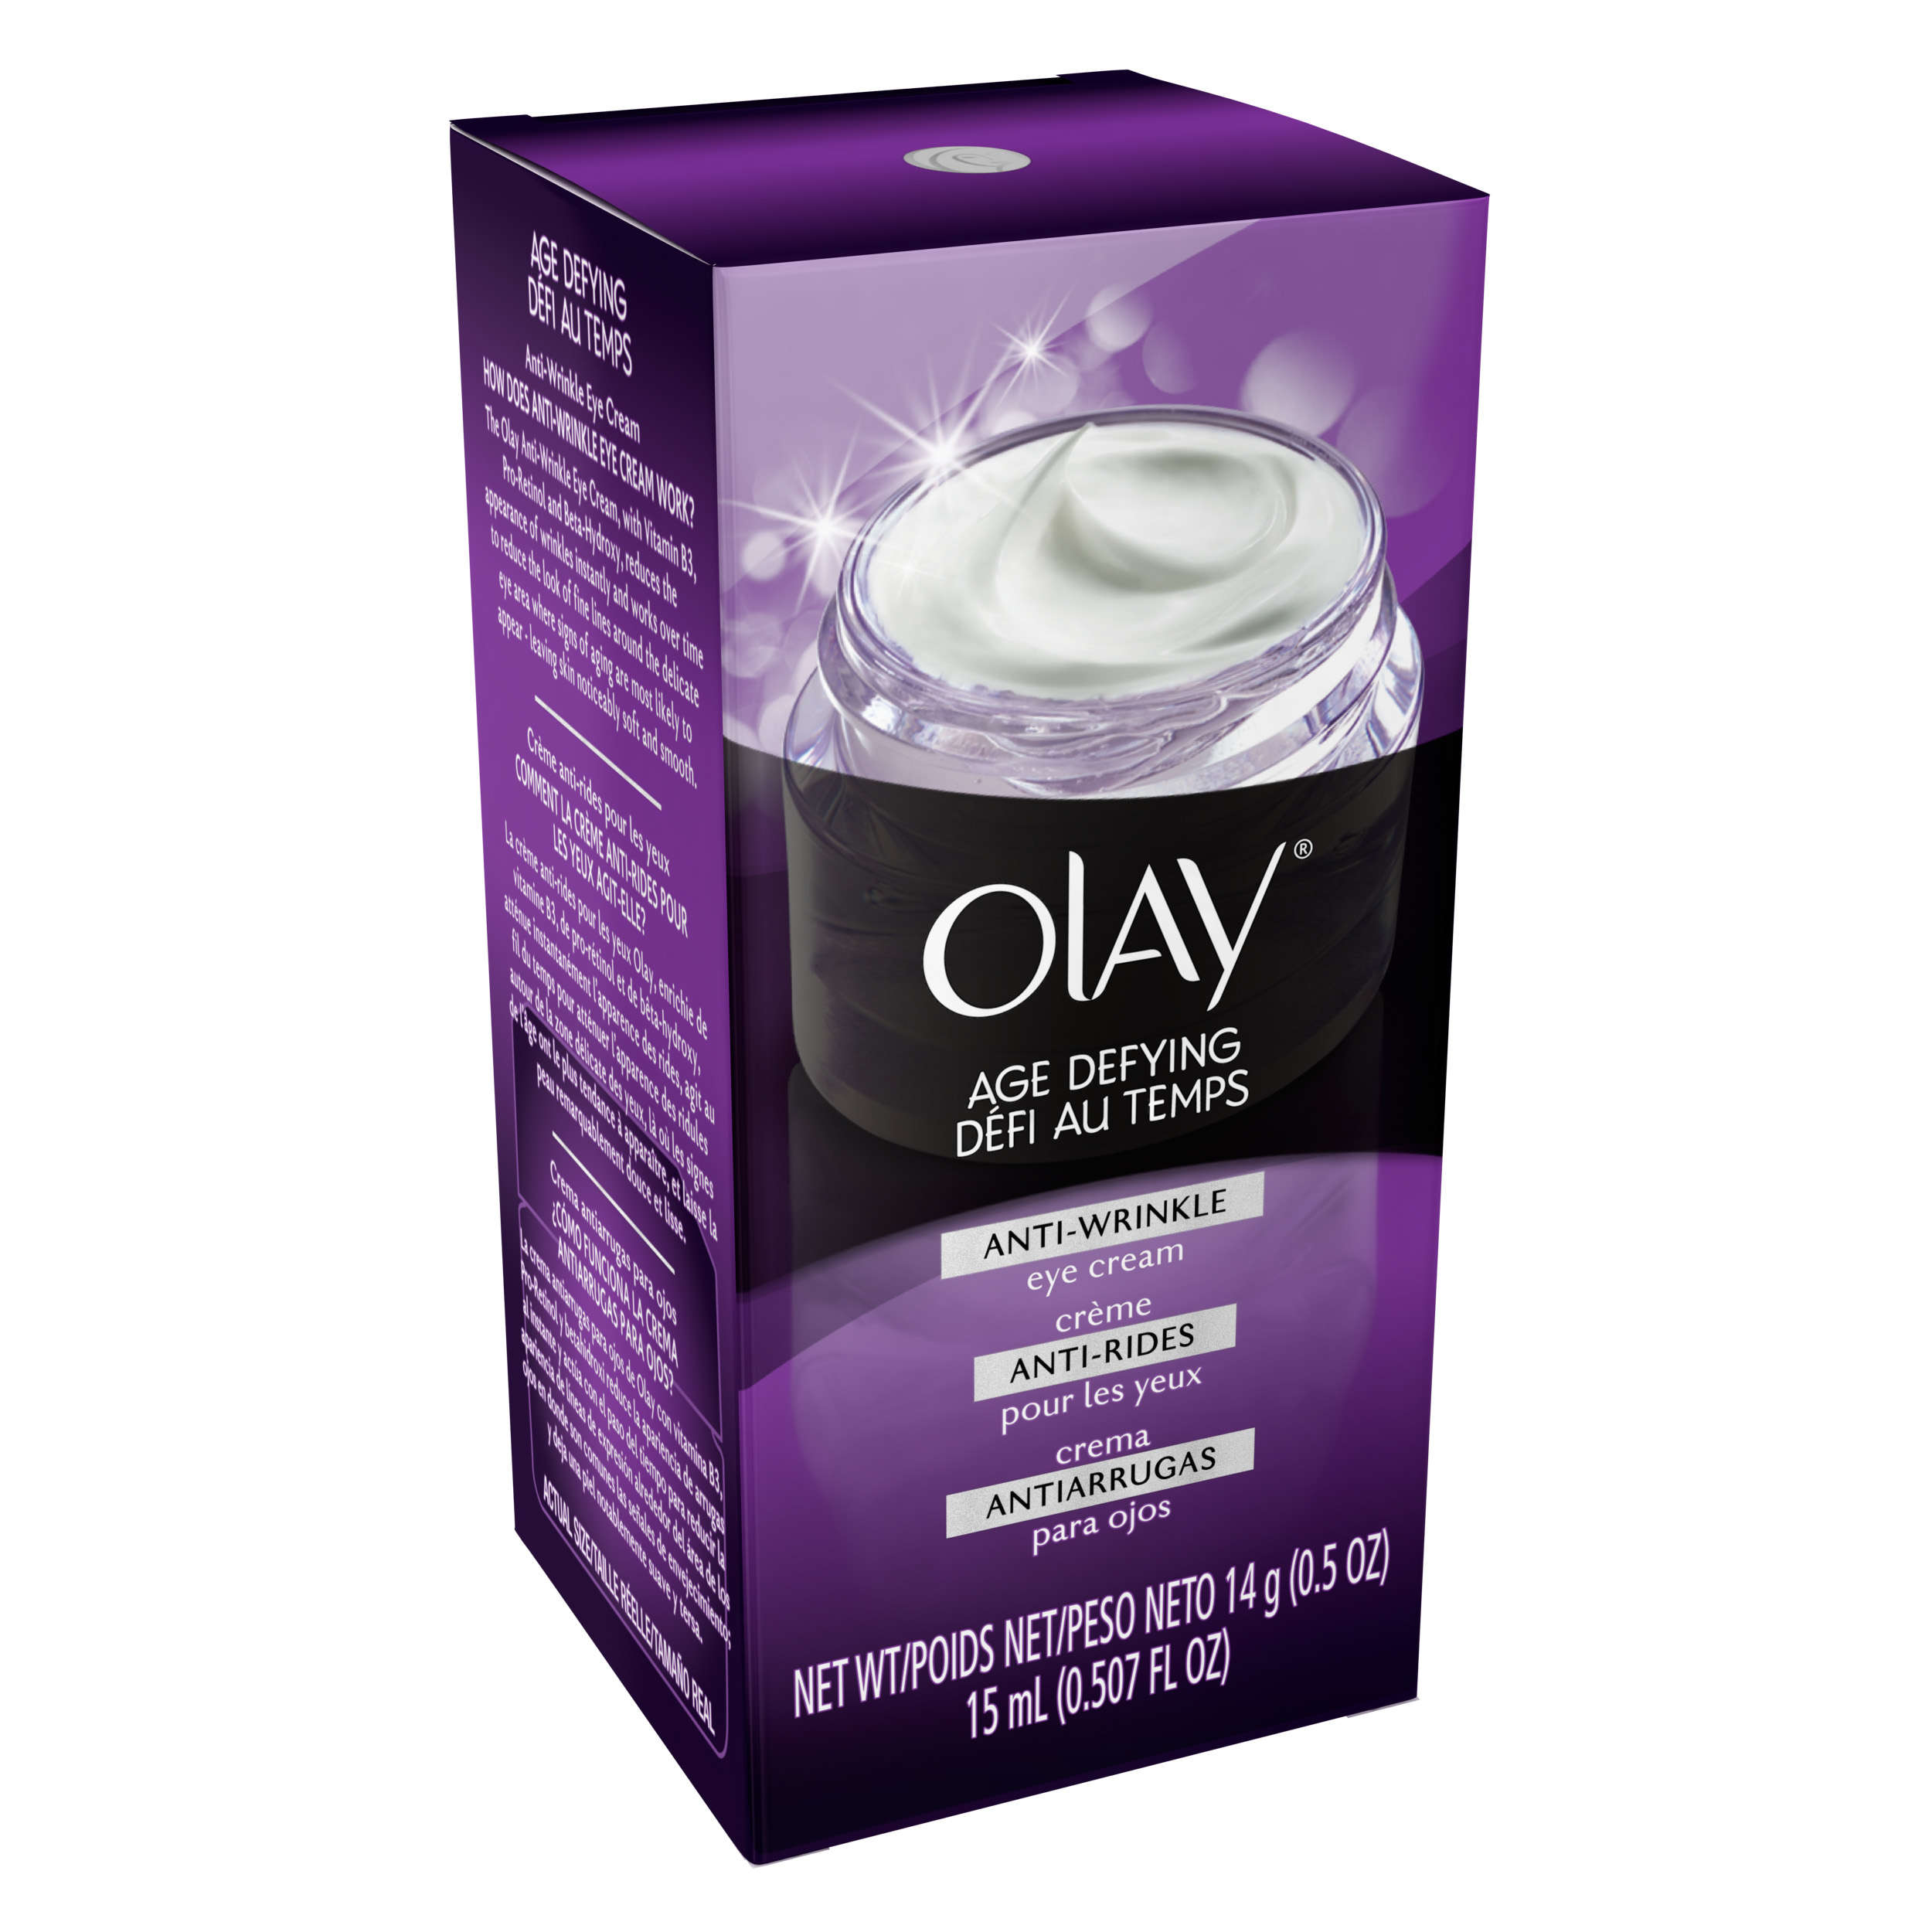 Olay Age Defying Anti-Wrinkle Eye Cream 14g (0.5 OZ) - image 3 of 6